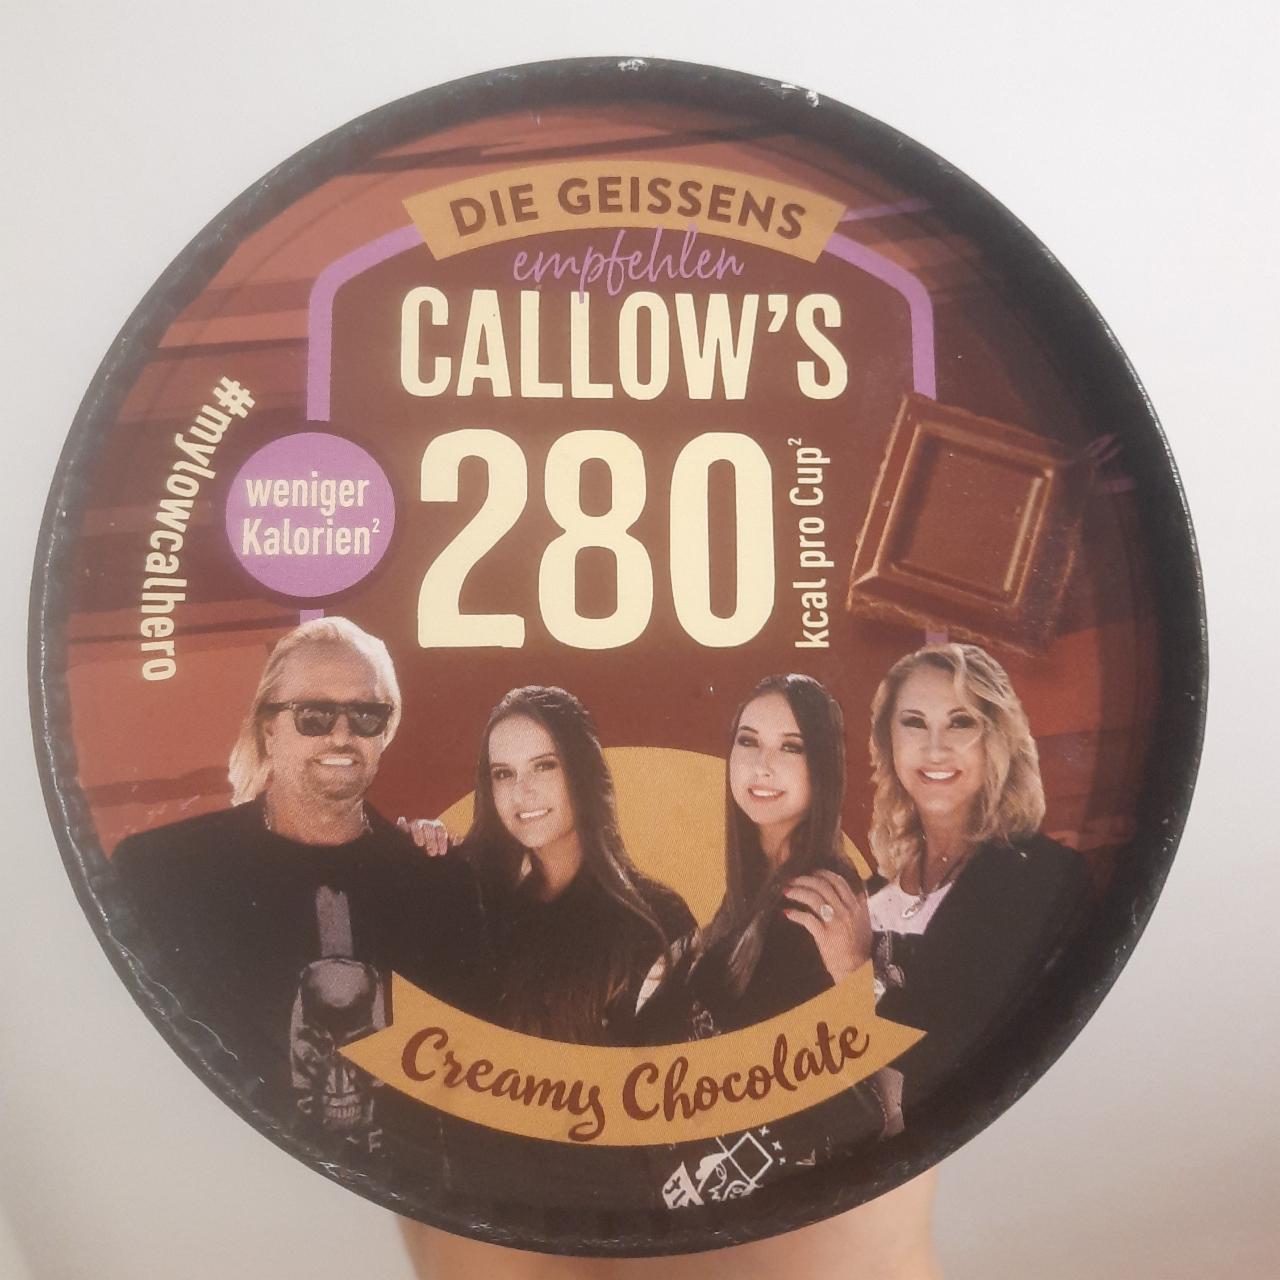 Fotografie - Empfehlen Callow's 280 kcal Creamy Chocolate Die Geissens